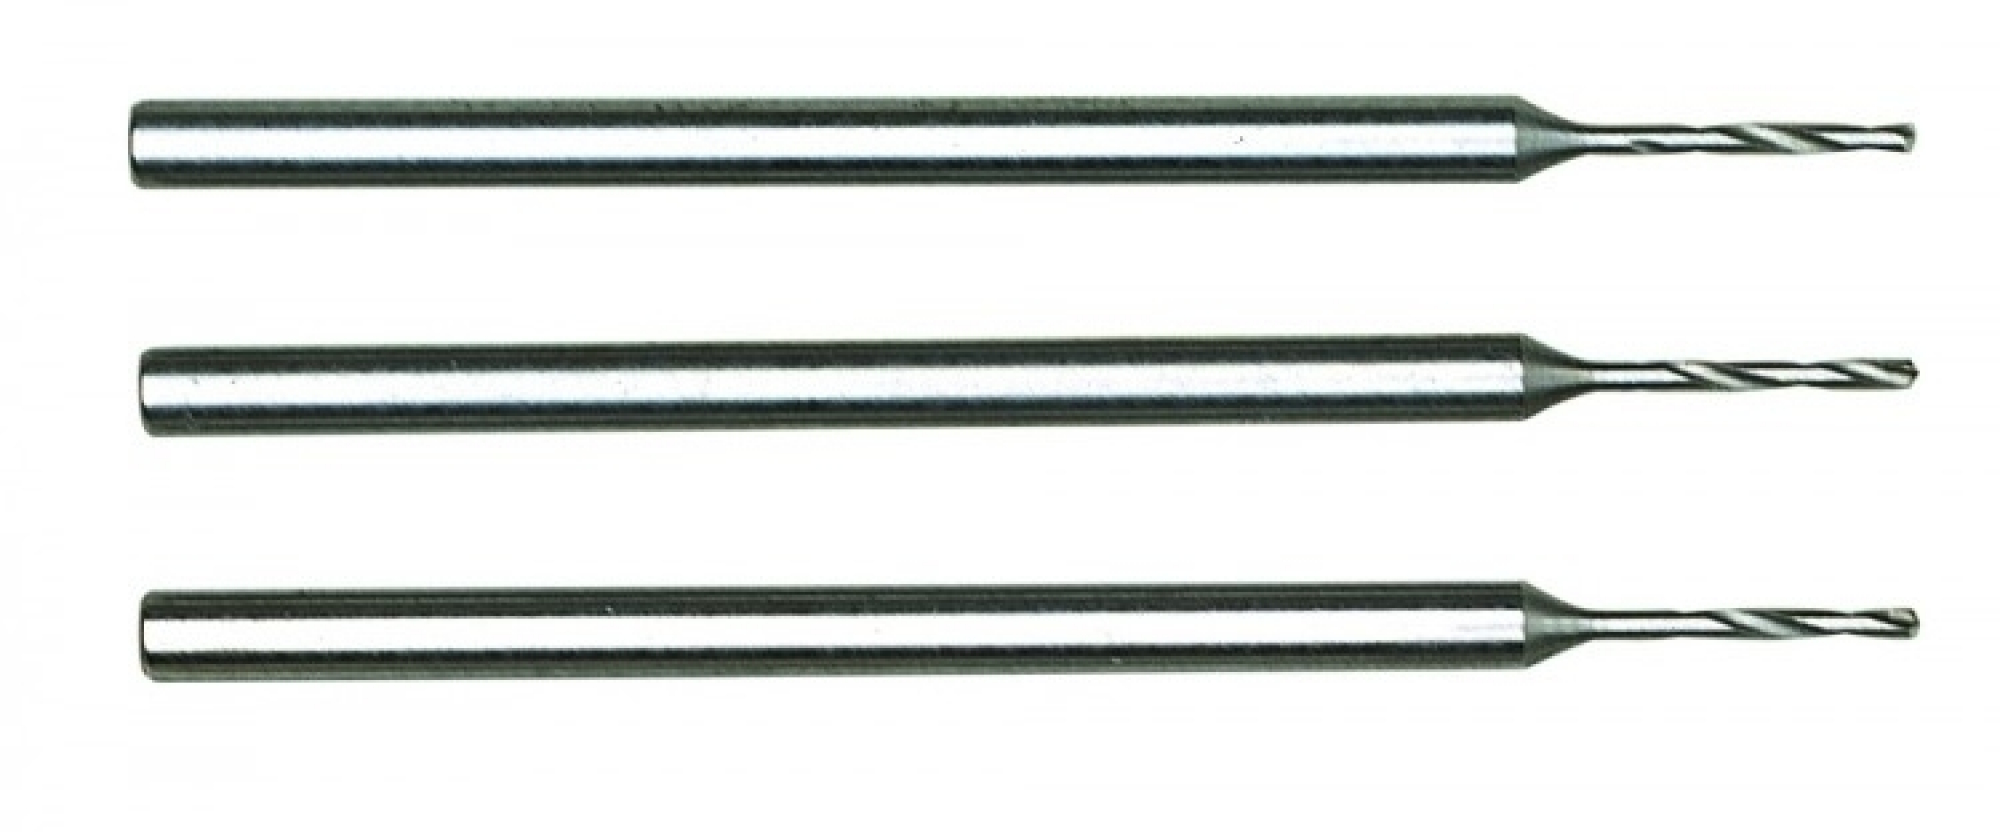 HSS-Stahl 3 Stück 28856 1,2 mm Proxxon Mikro-Spiralbohrer 